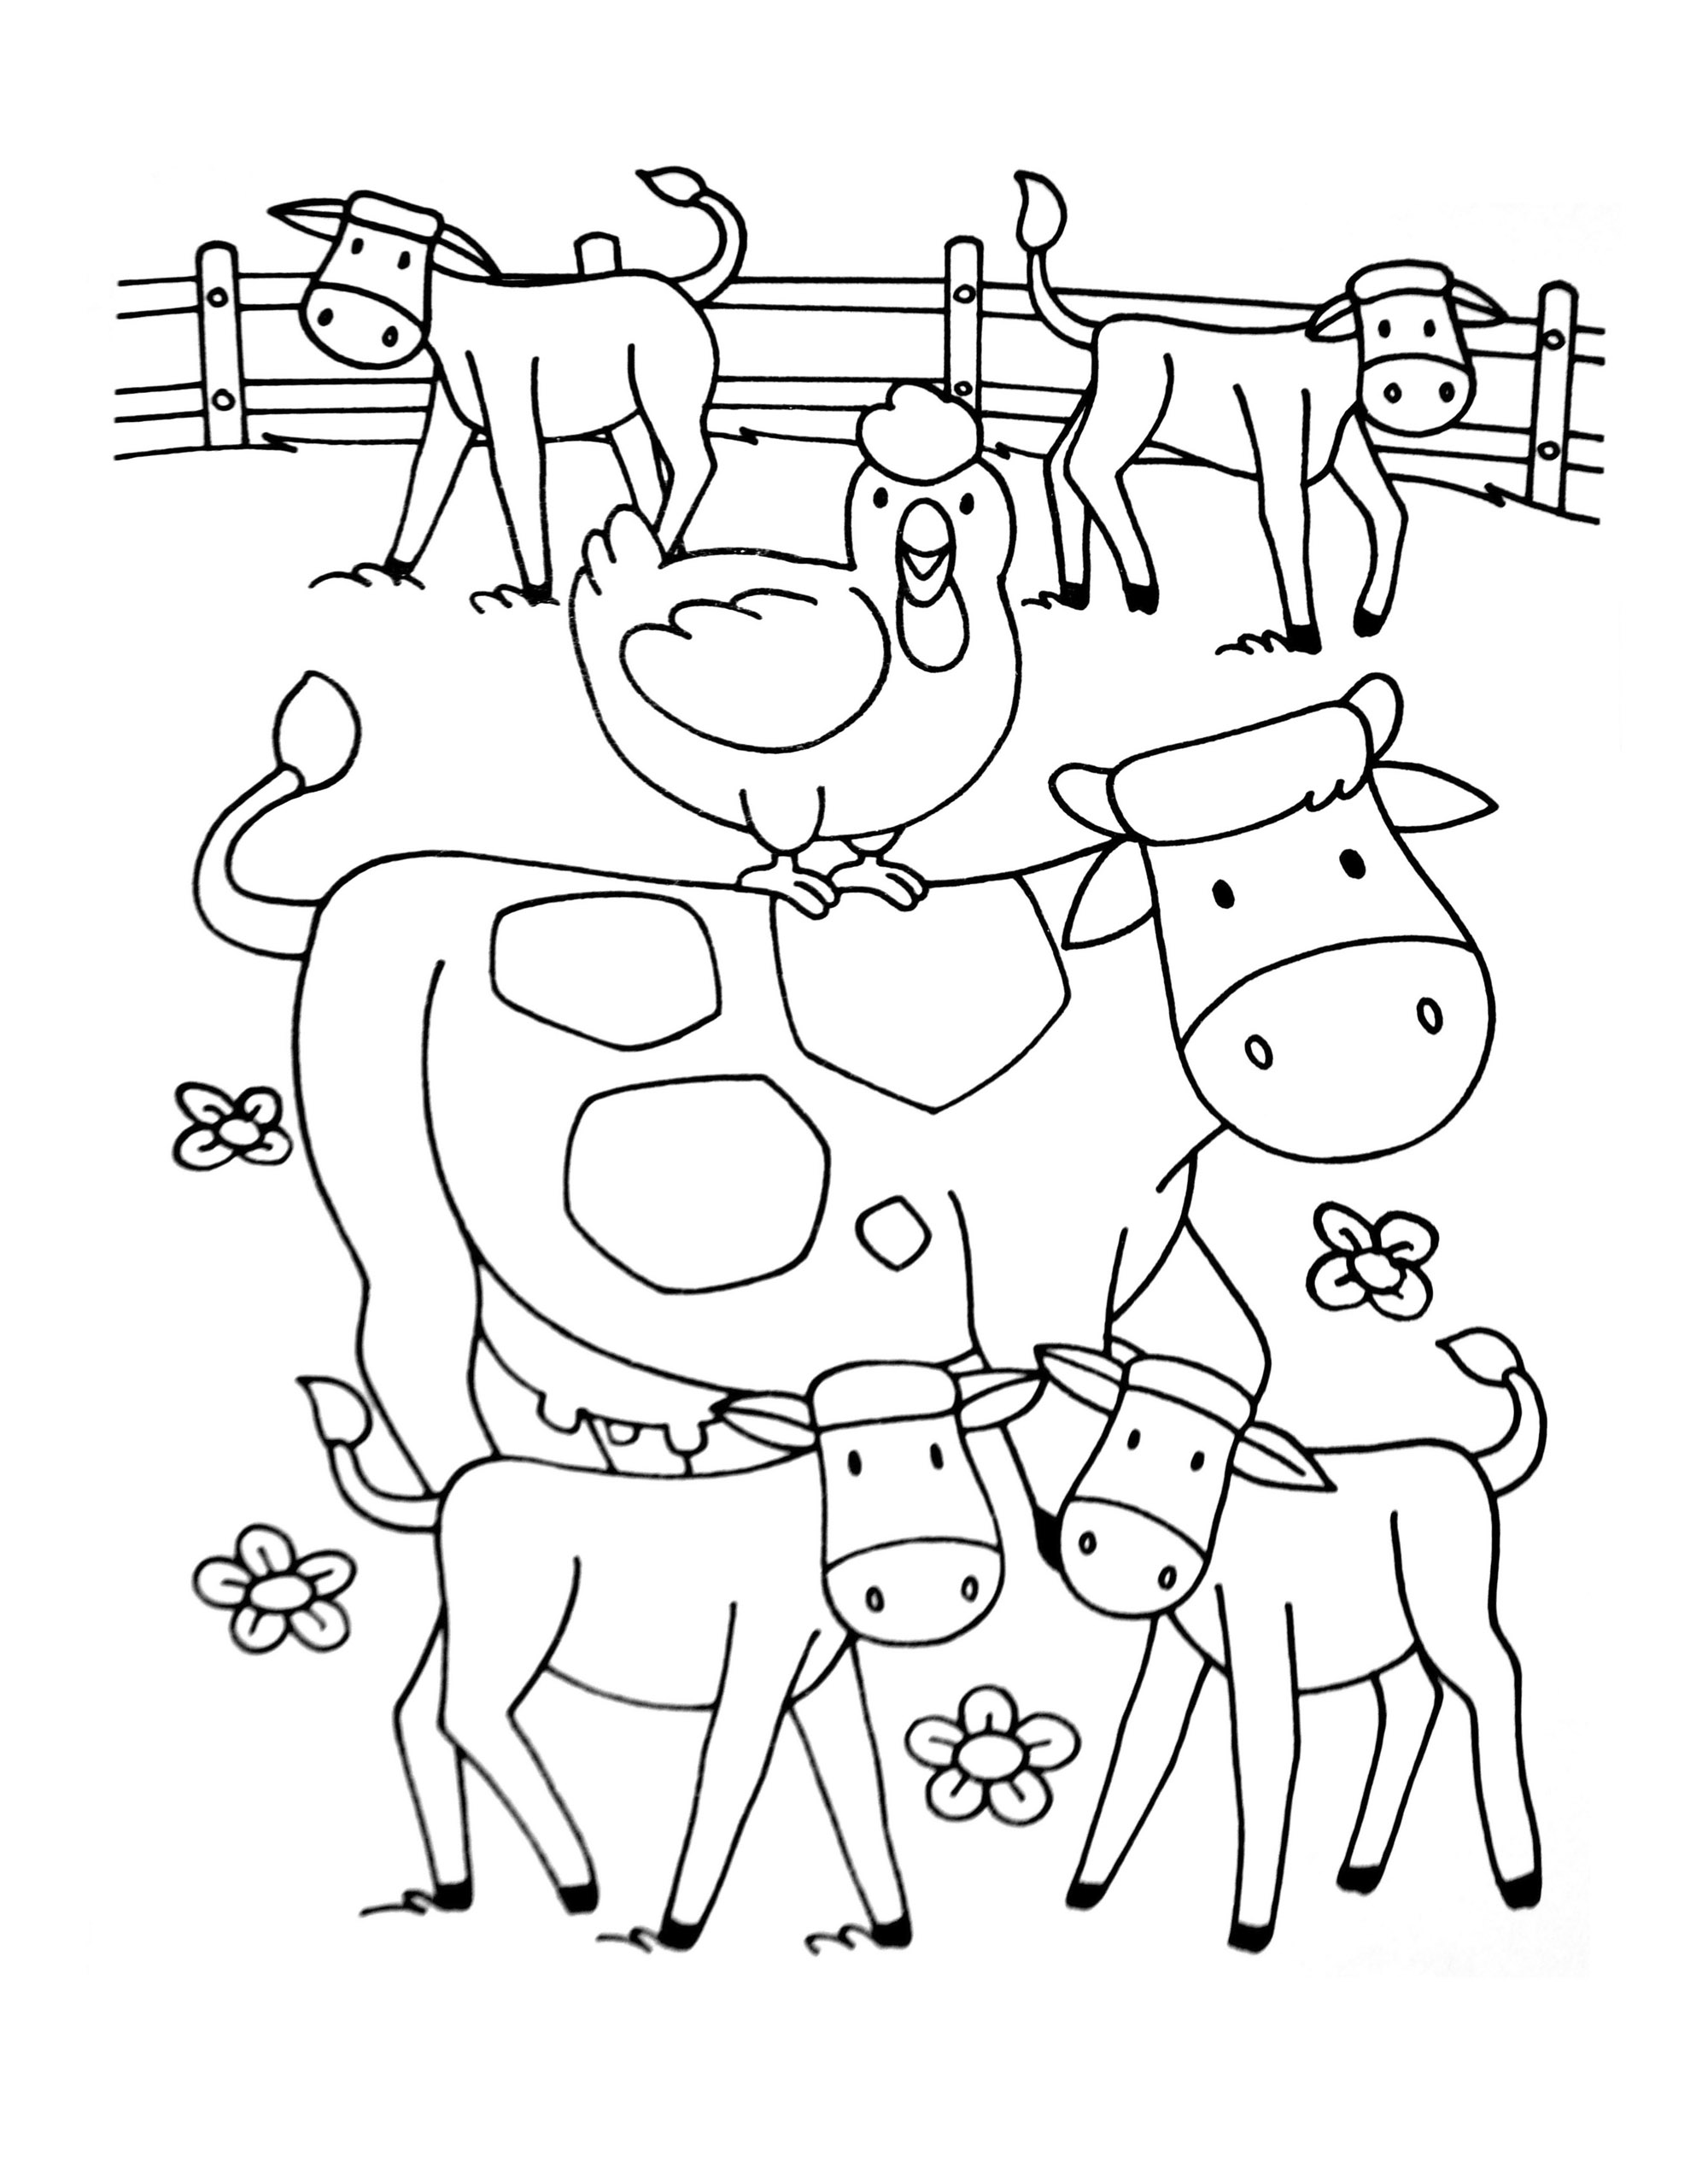 Dibujos de granjas para niños descargables e imprimibles